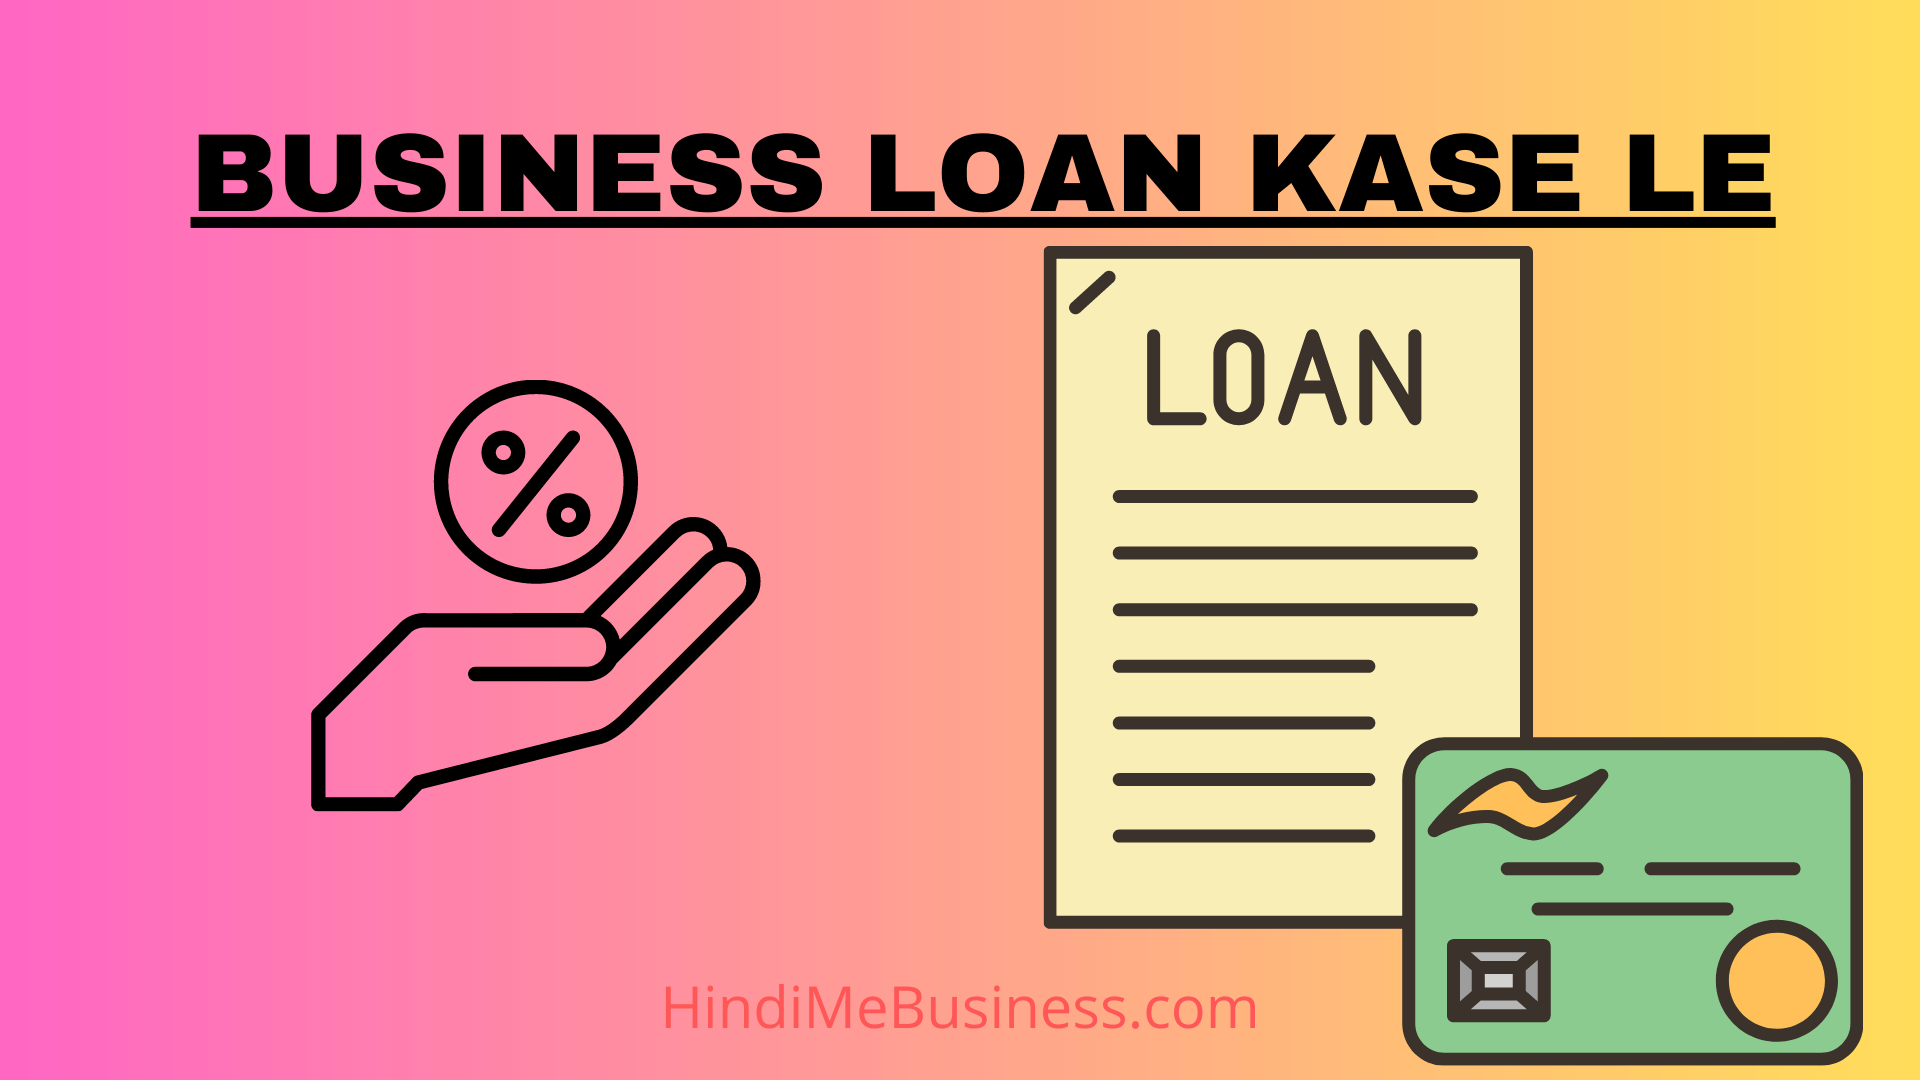 Business loan kase le